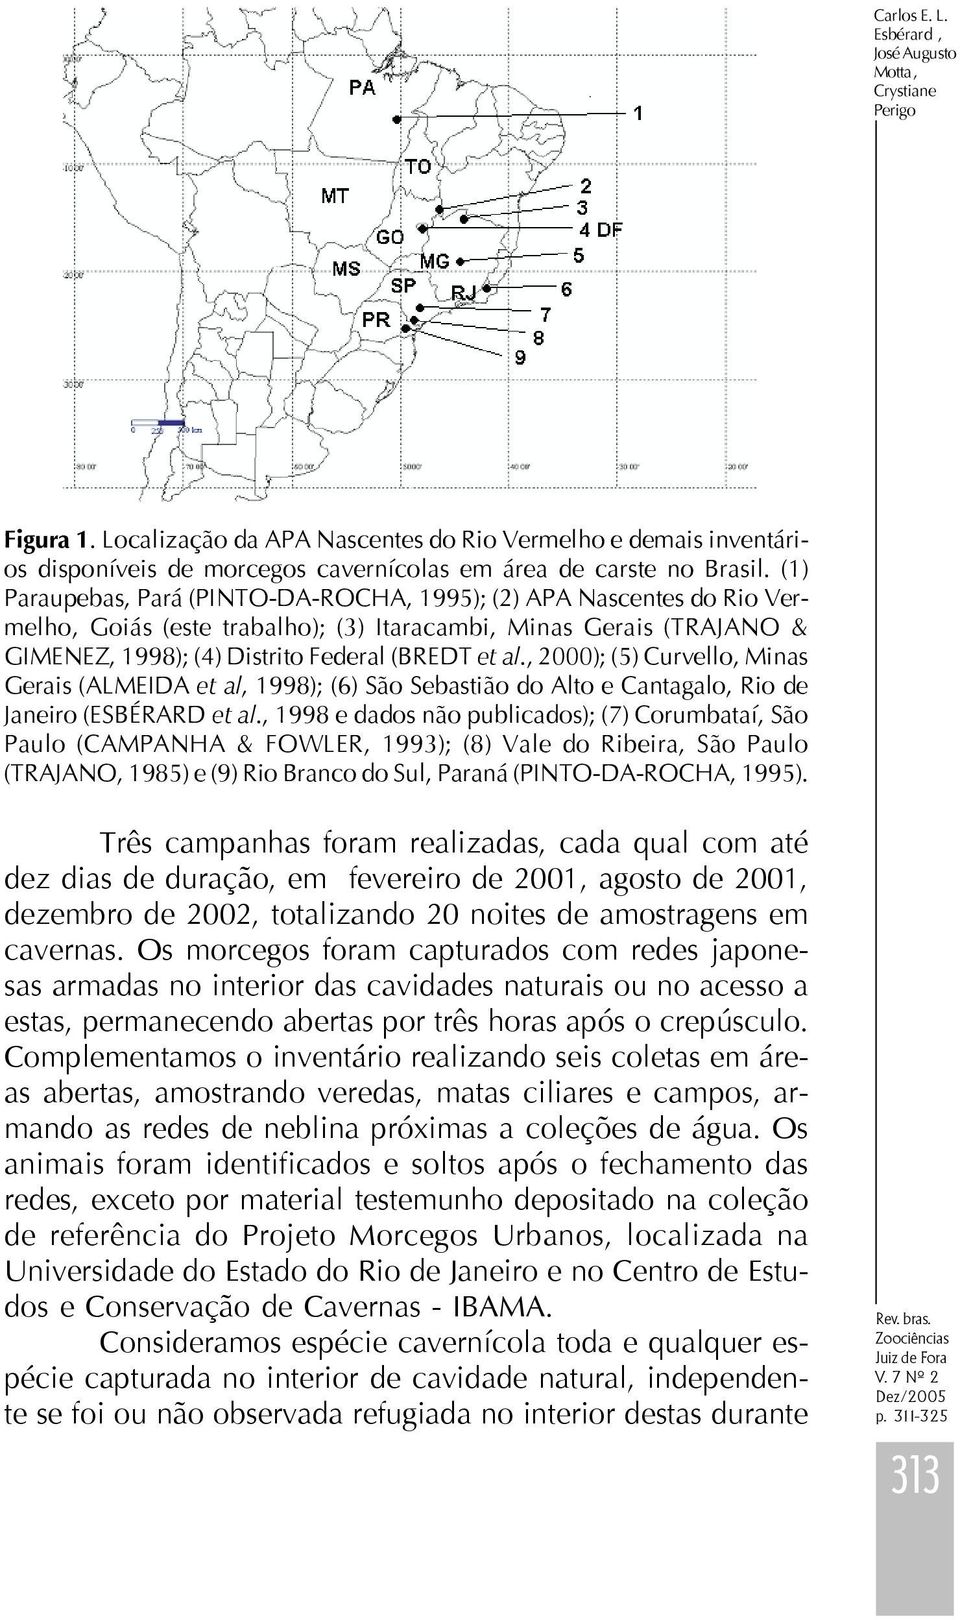 , ); () Curvello, Minas Gerais (ALMEIDA et al, 998); () São Sebastião do Alto e Cantagalo, Rio de Janeiro (ESBÉRARD et al.